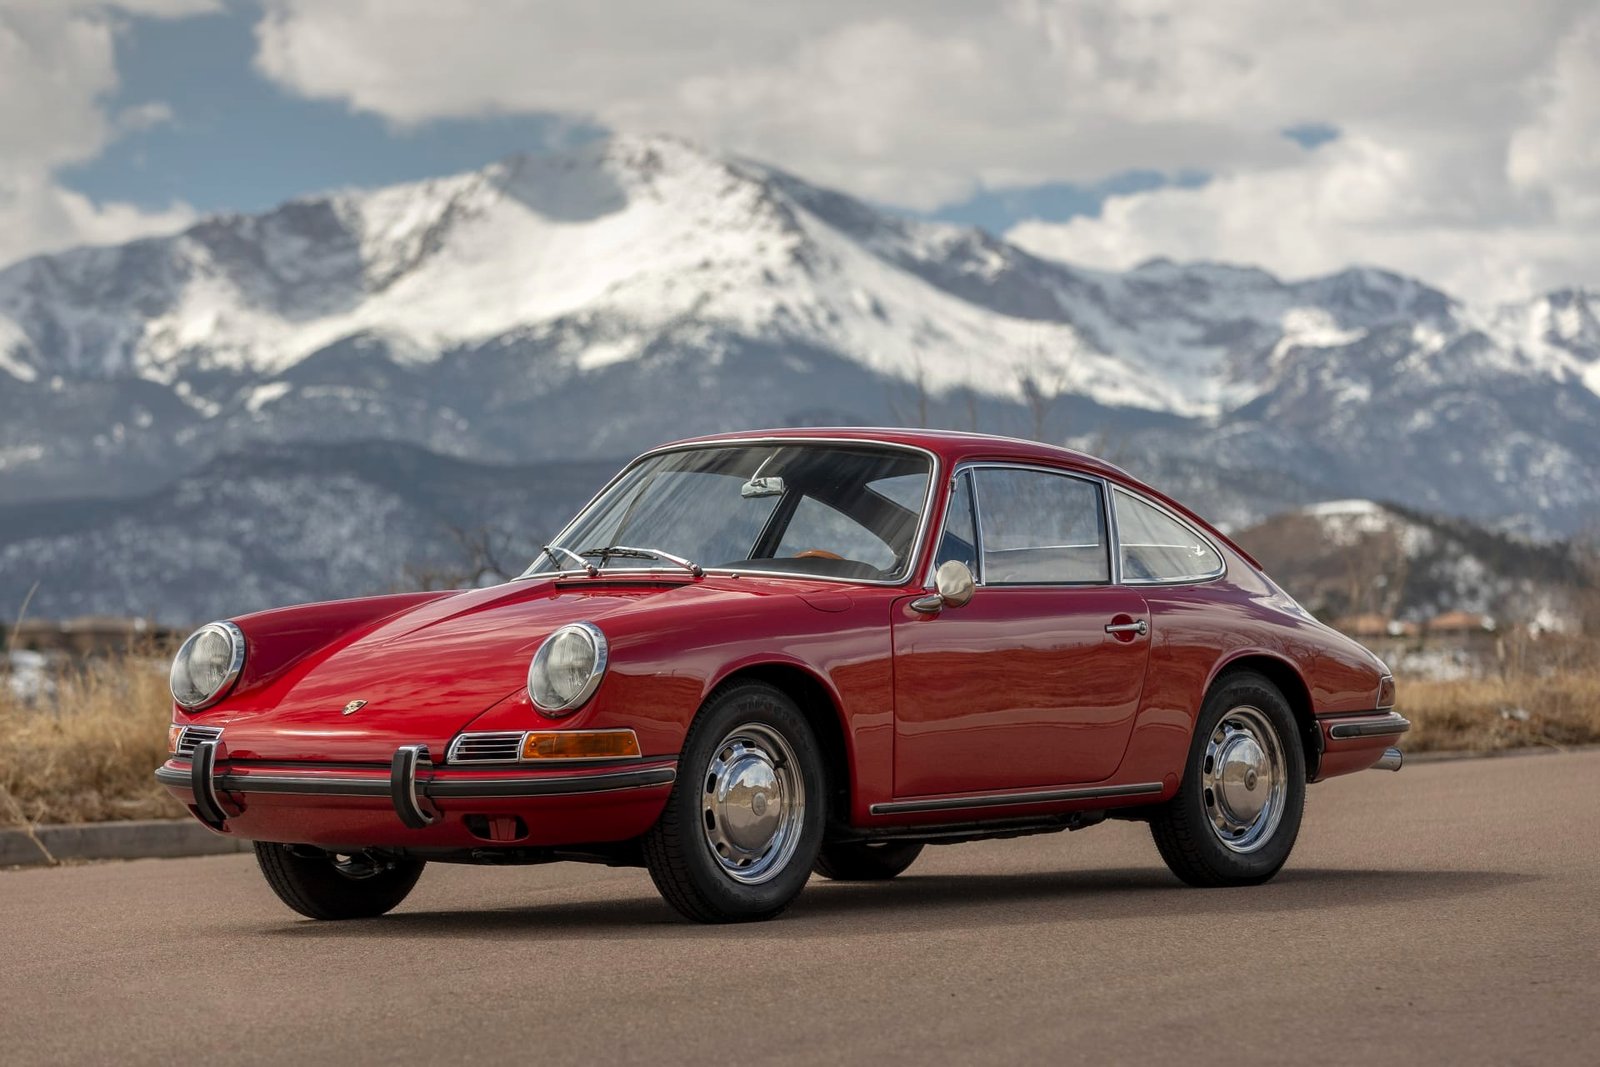 1967 Porsche 911 For Sale